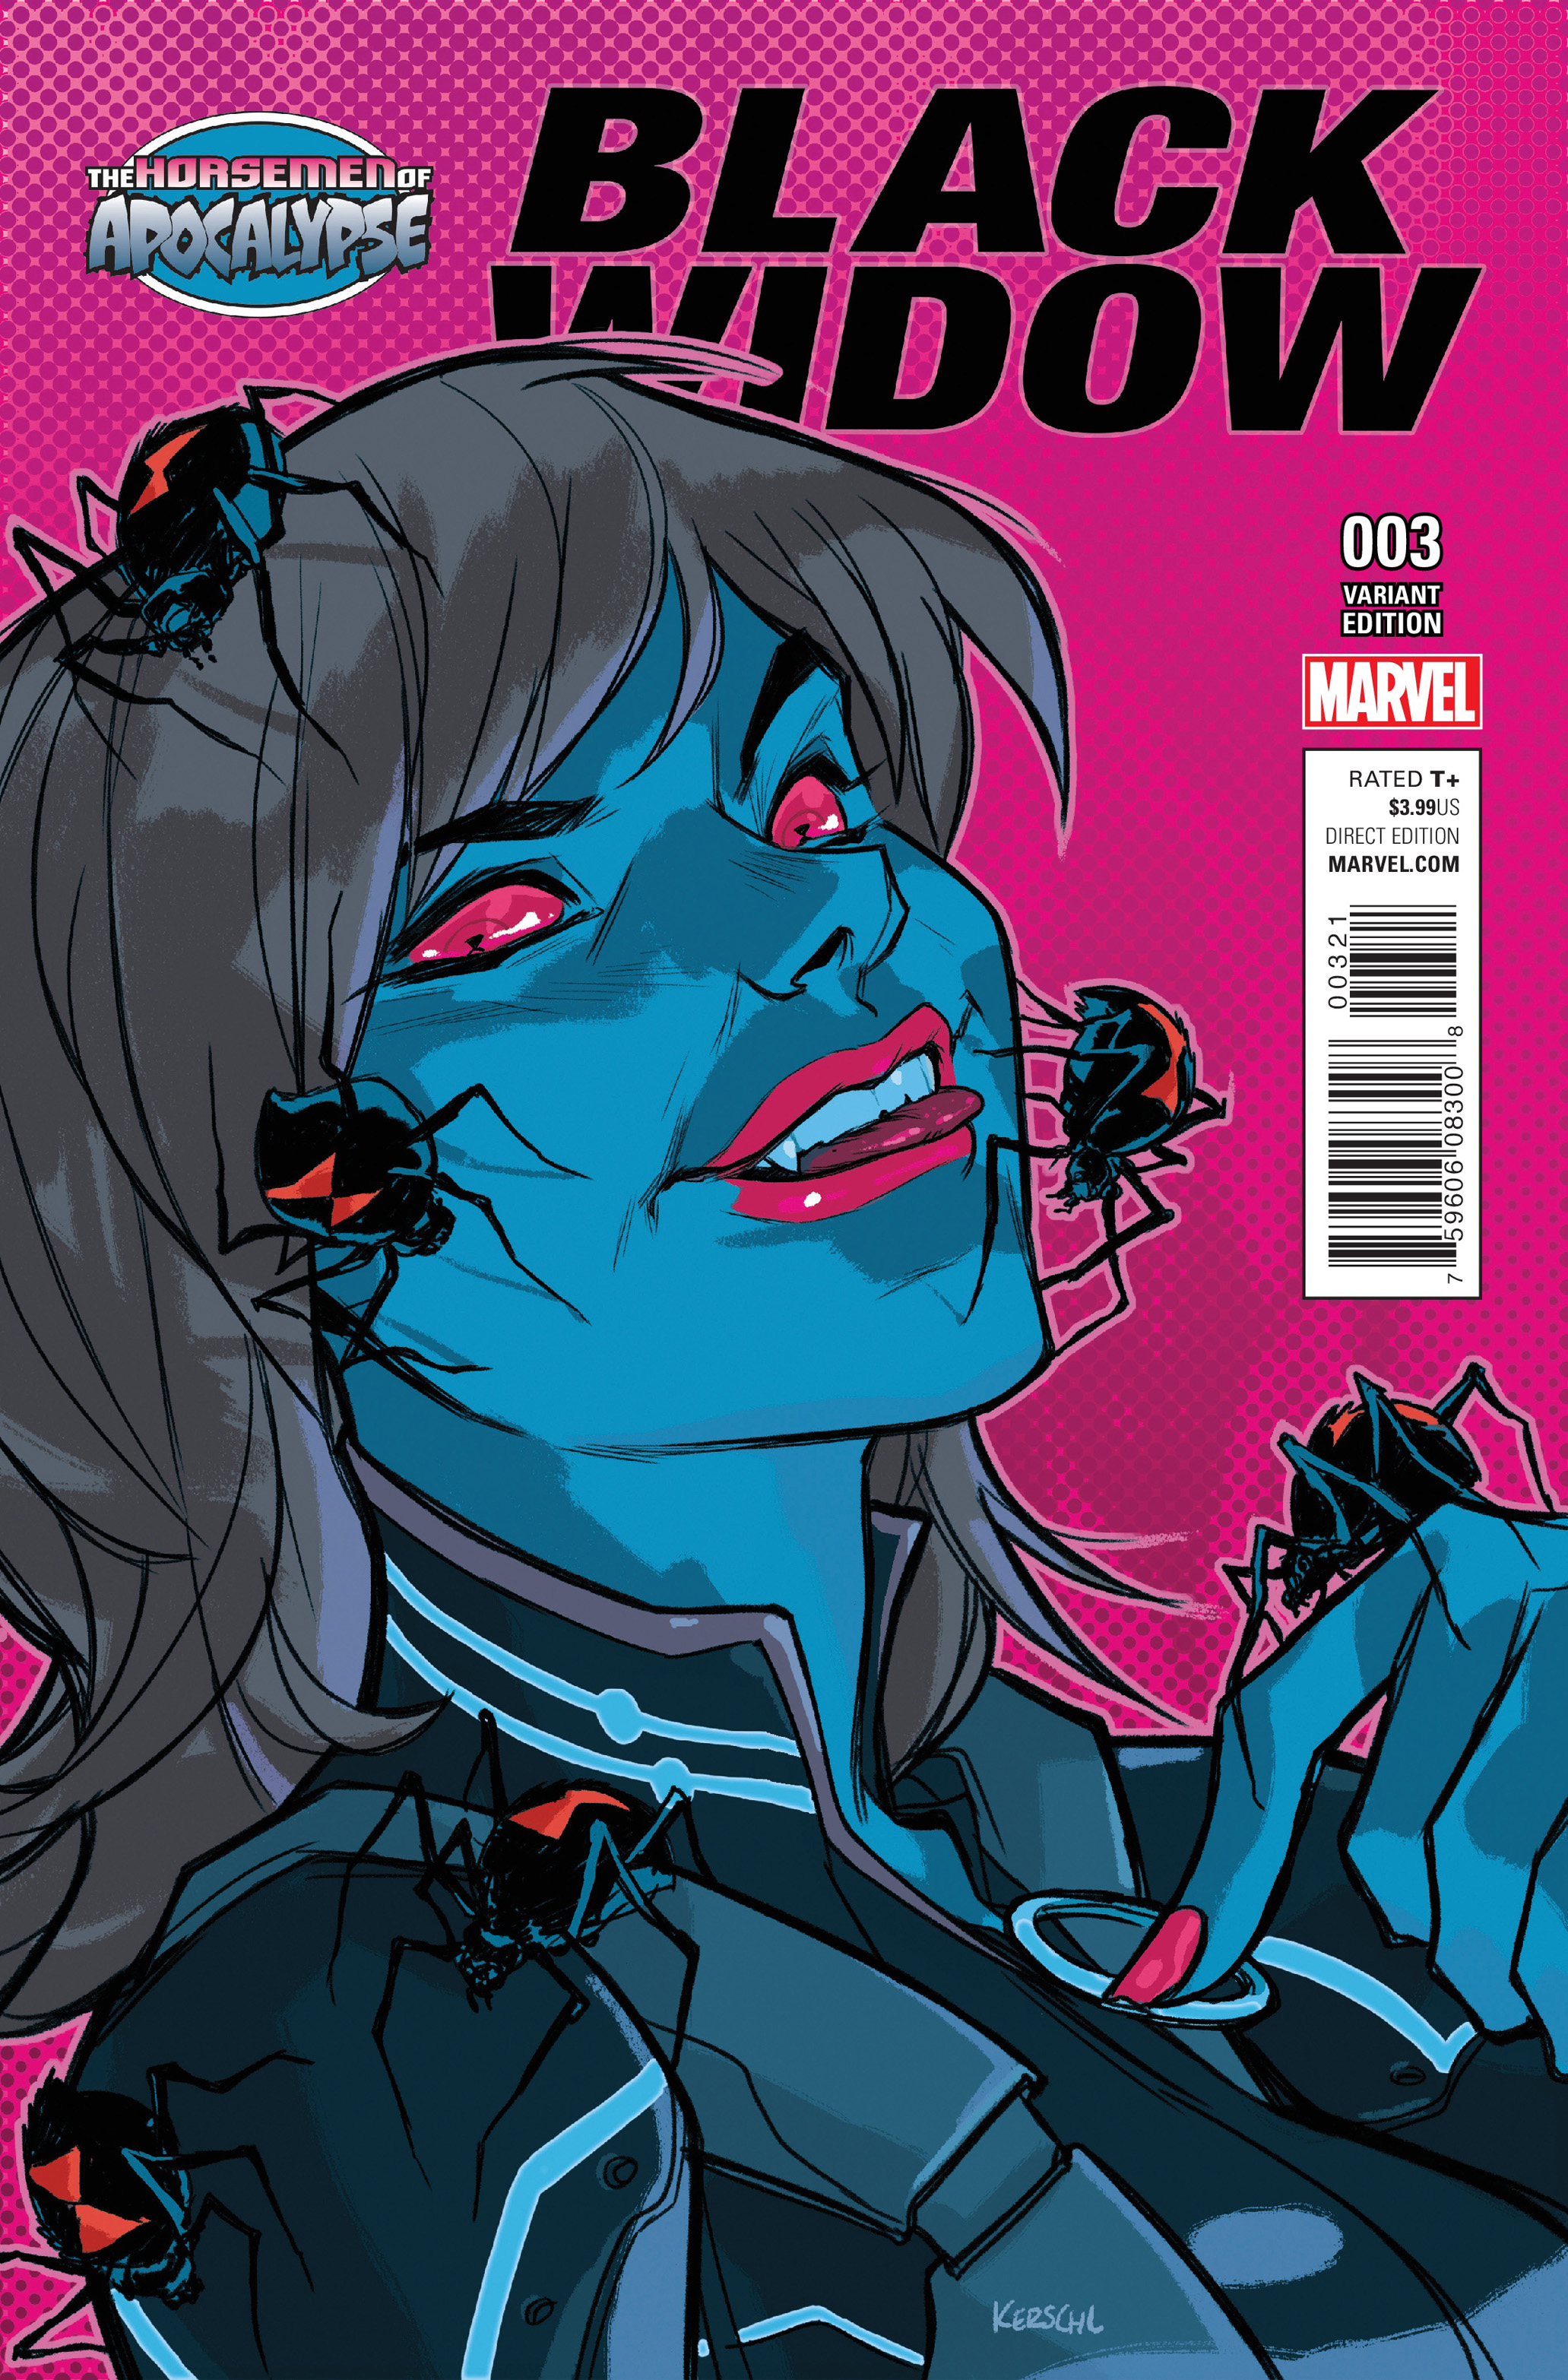 Black Widow Comics Cover. Вдова 2016